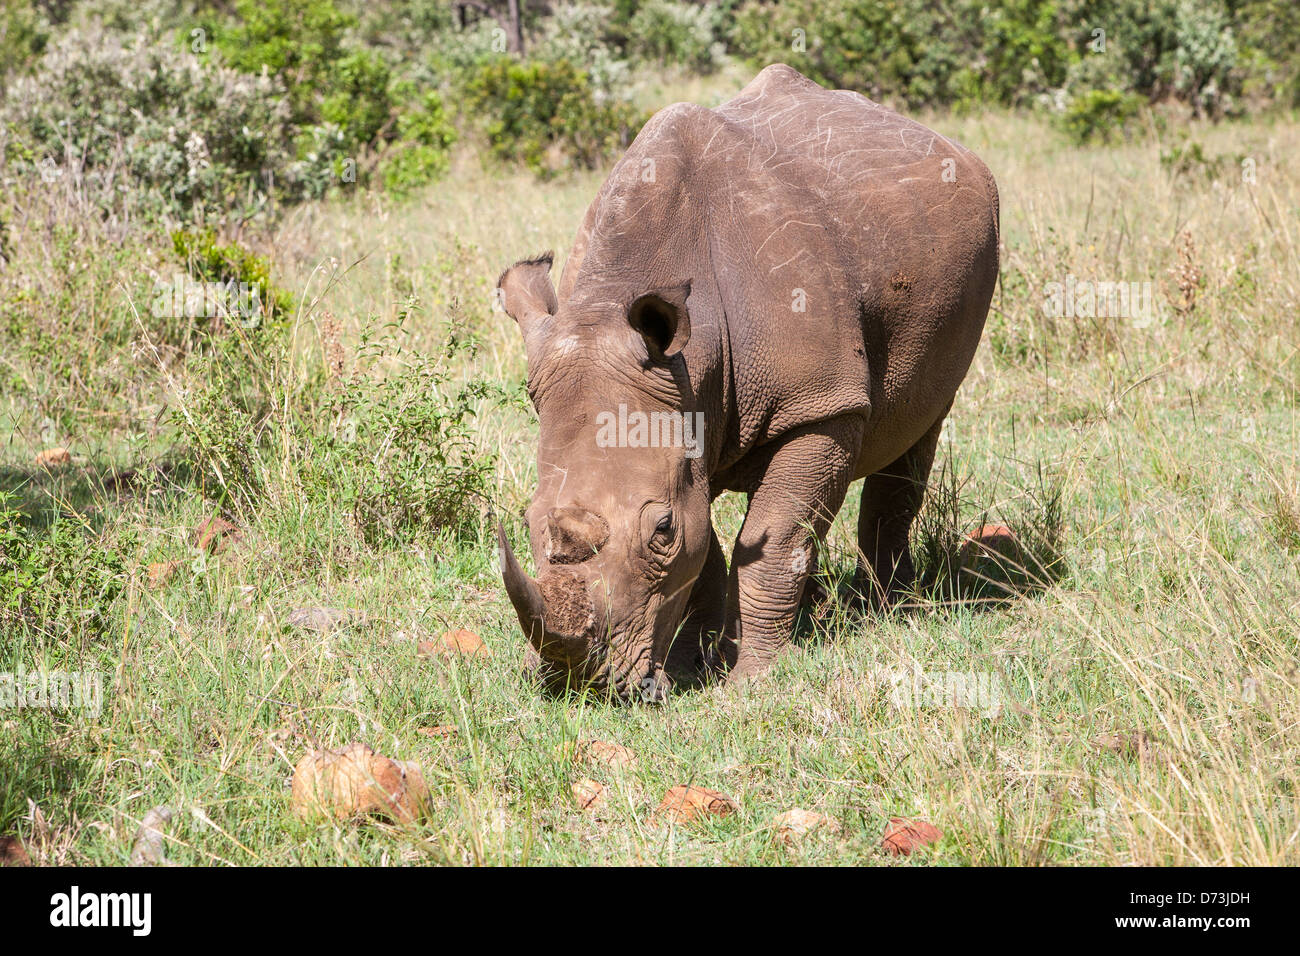 White Rhino calf grazing Stock Photo